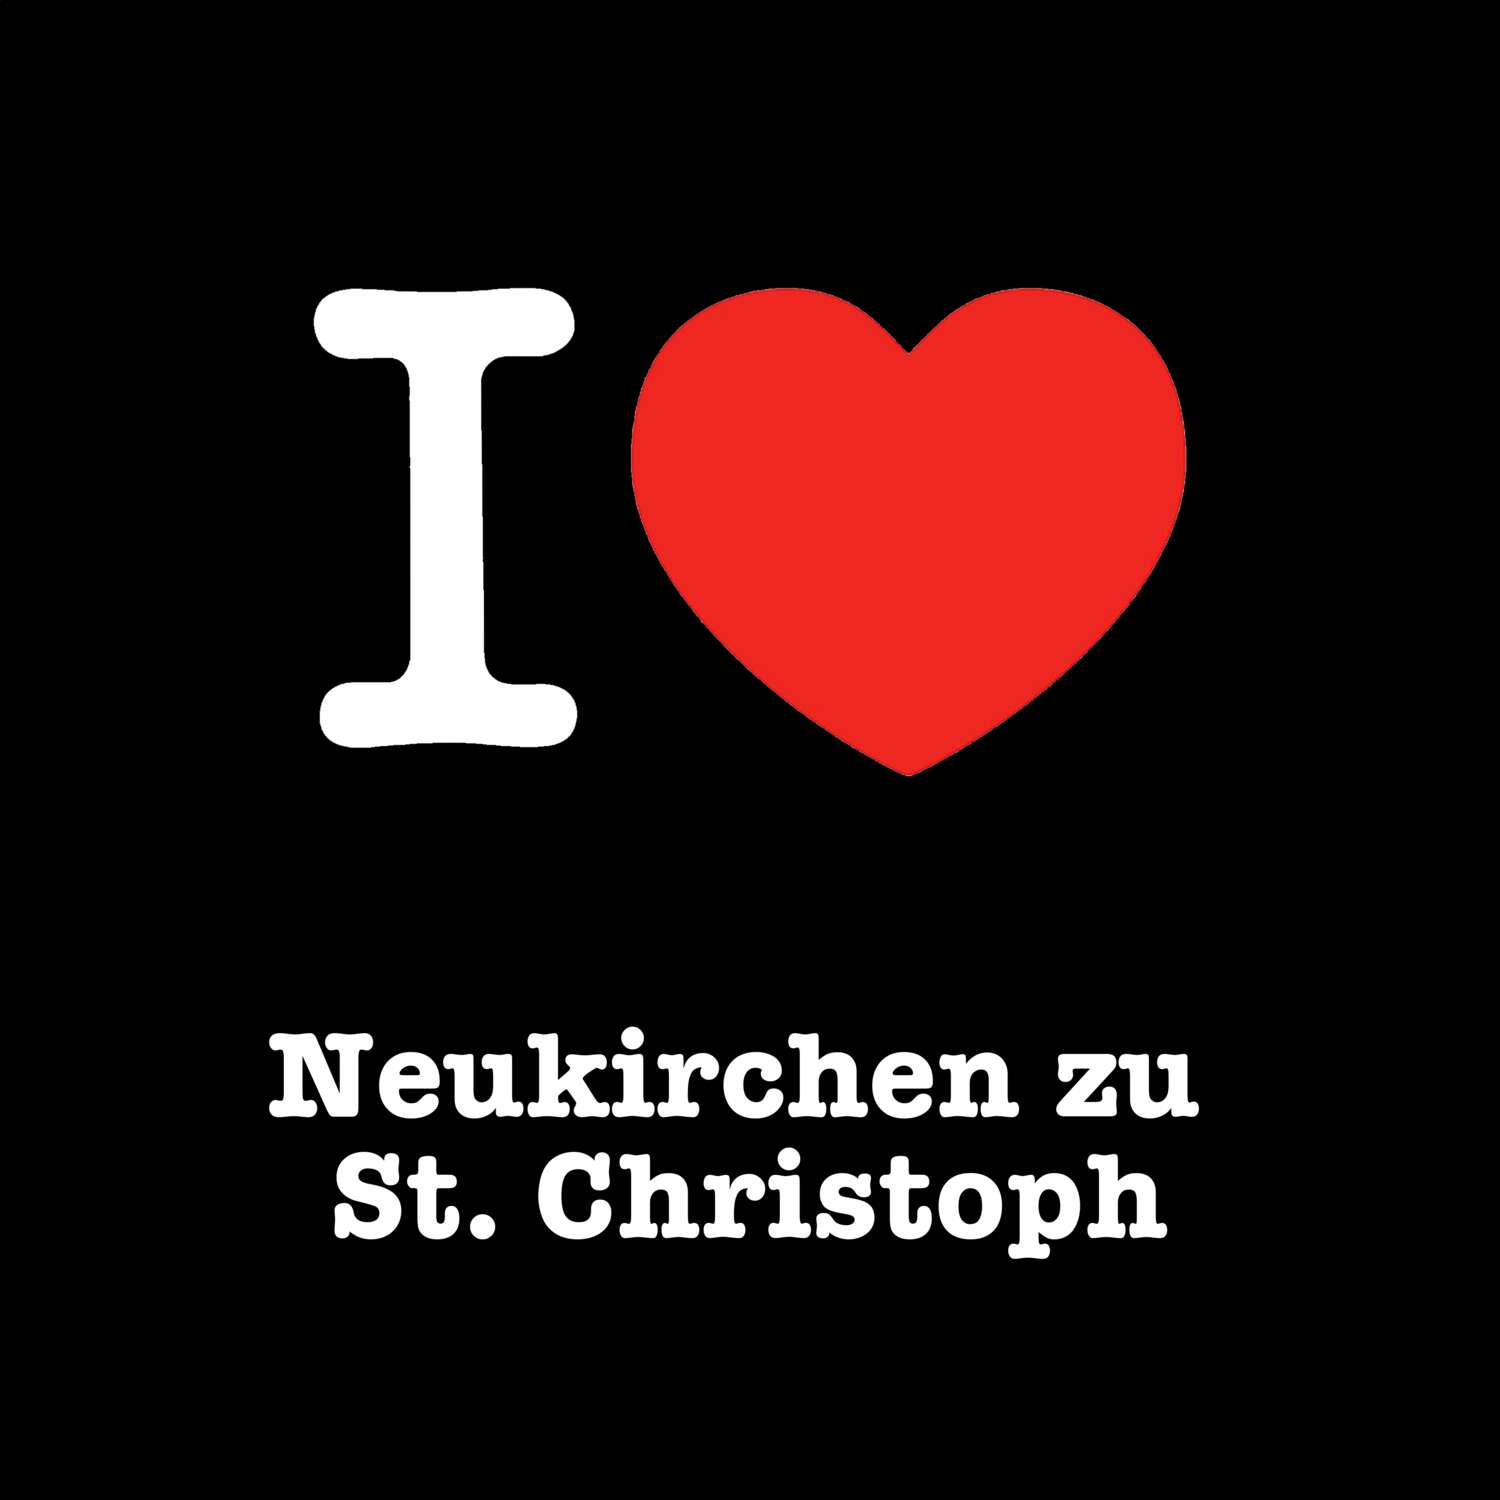 Neukirchen zu St. Christoph T-Shirt »I love«